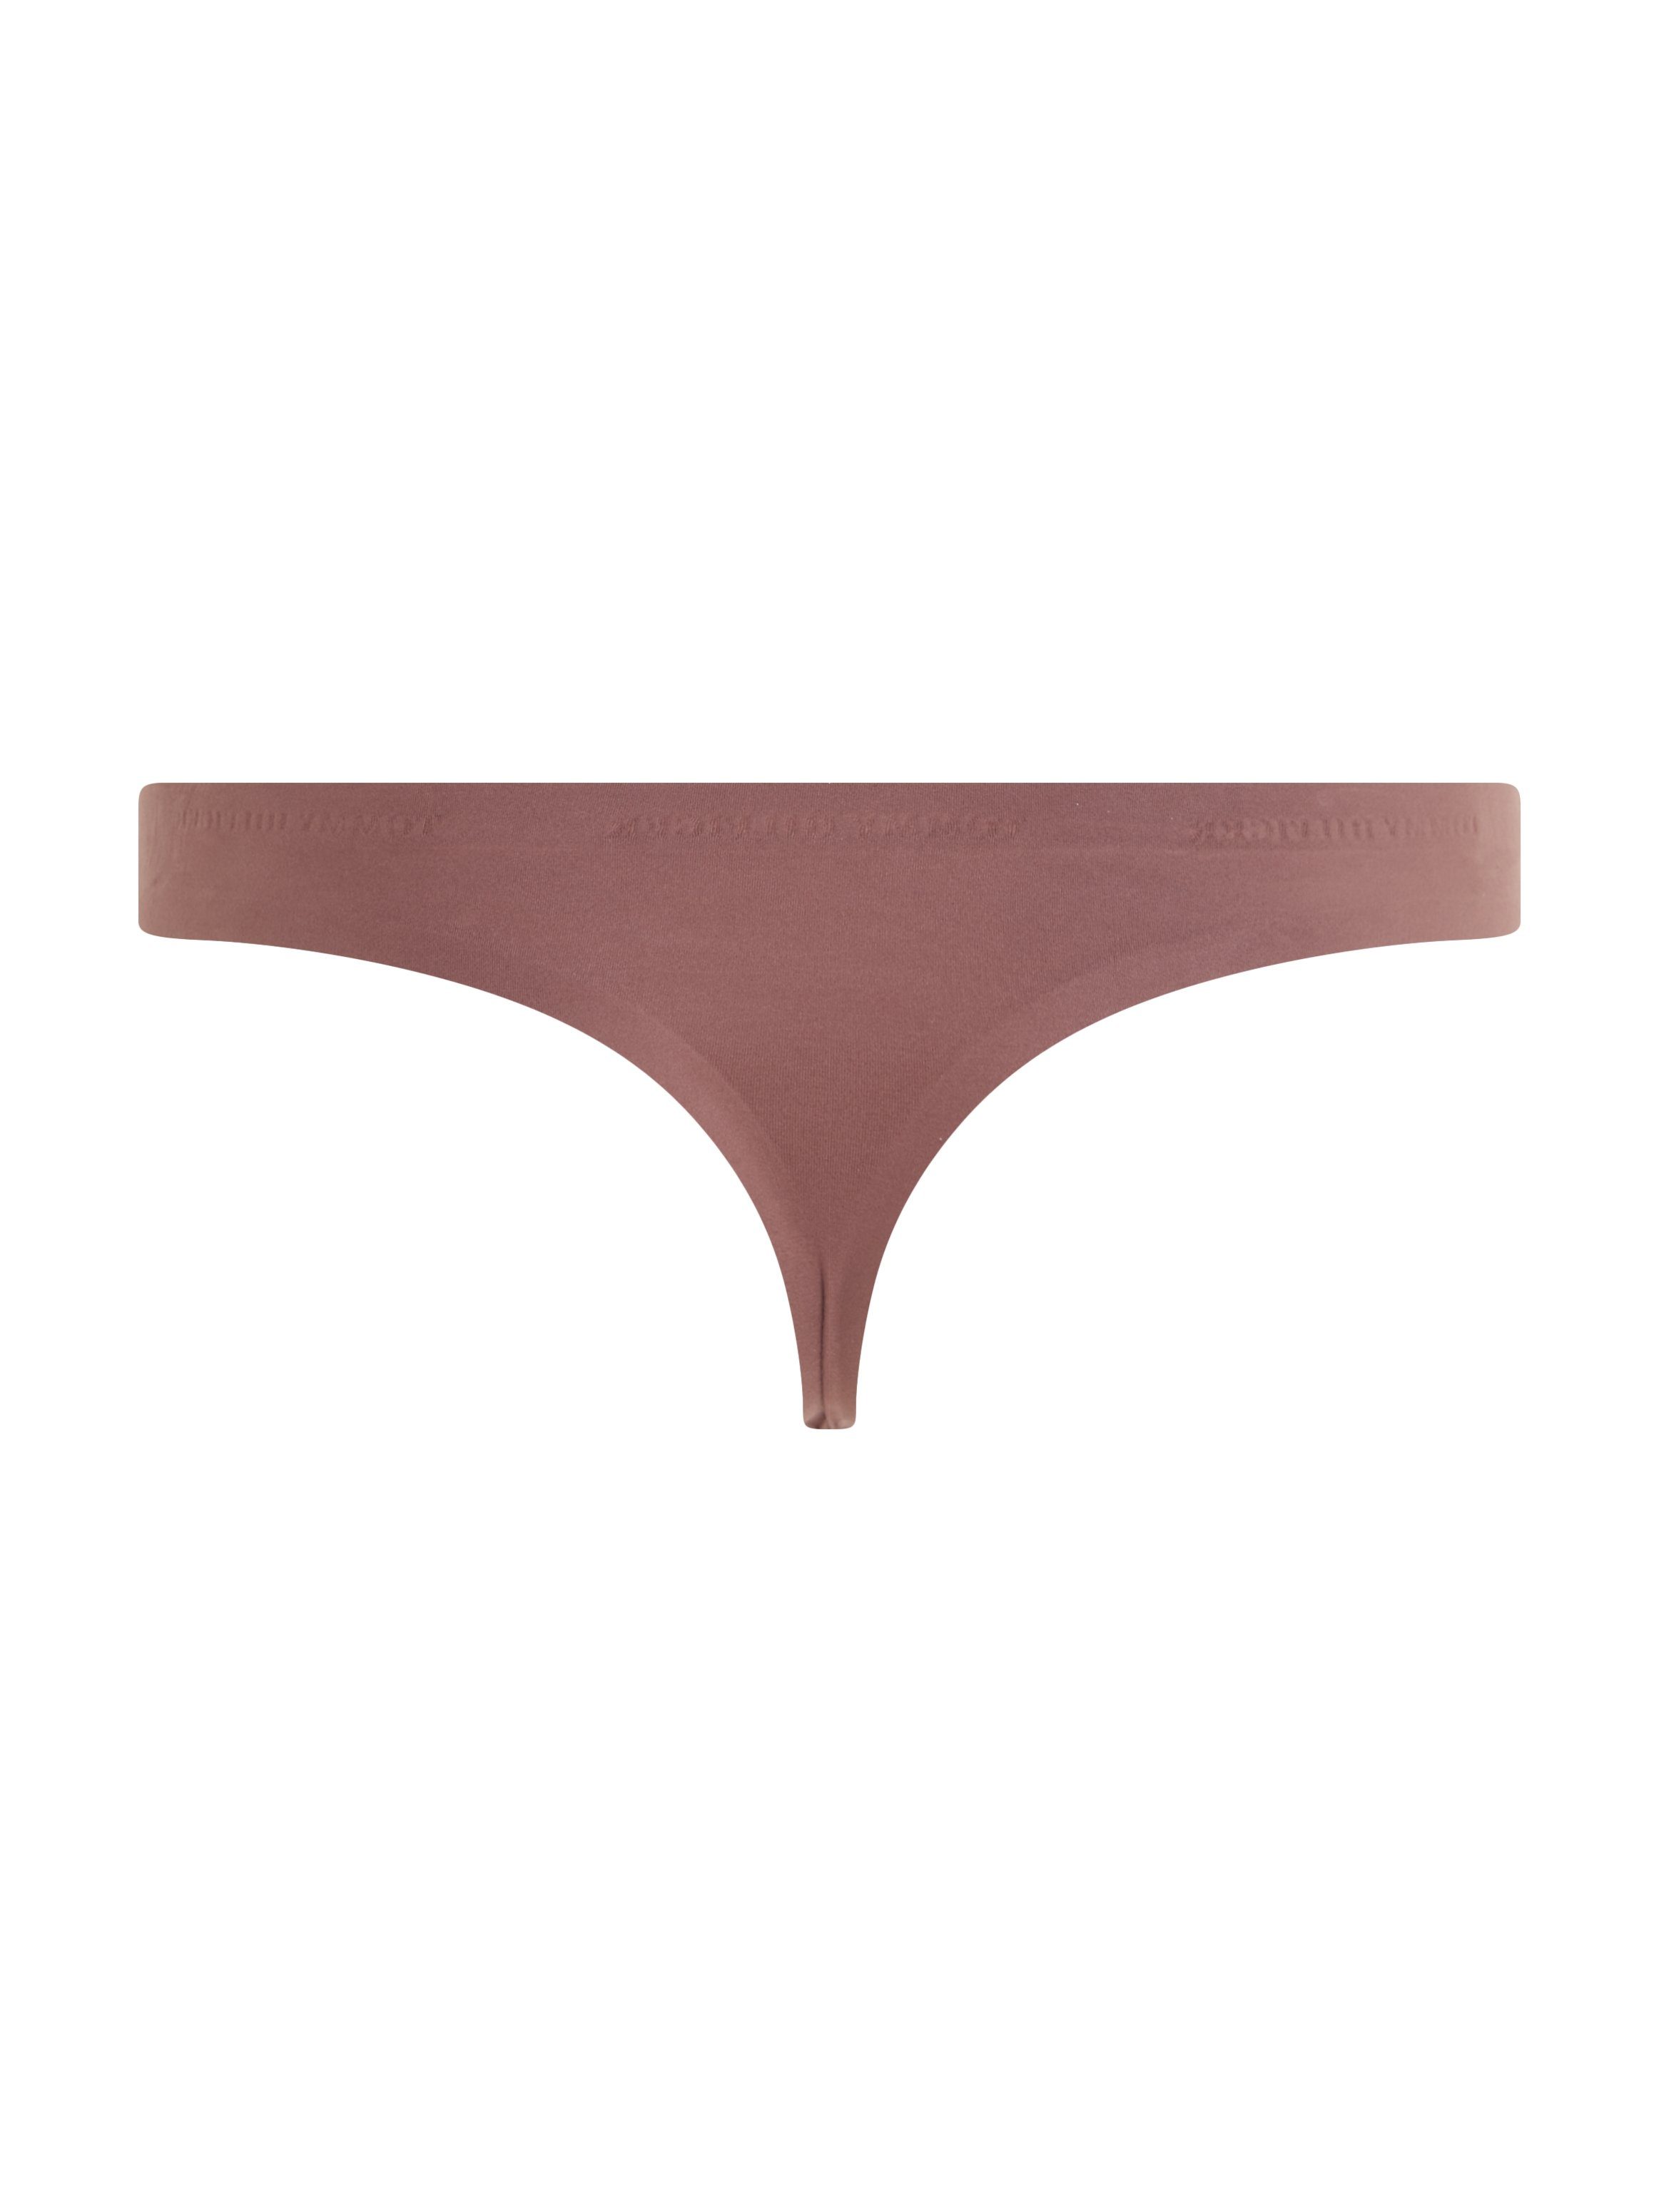 Tommy Hilfiger Underwear T-String dunkelbraun Soft Ultra